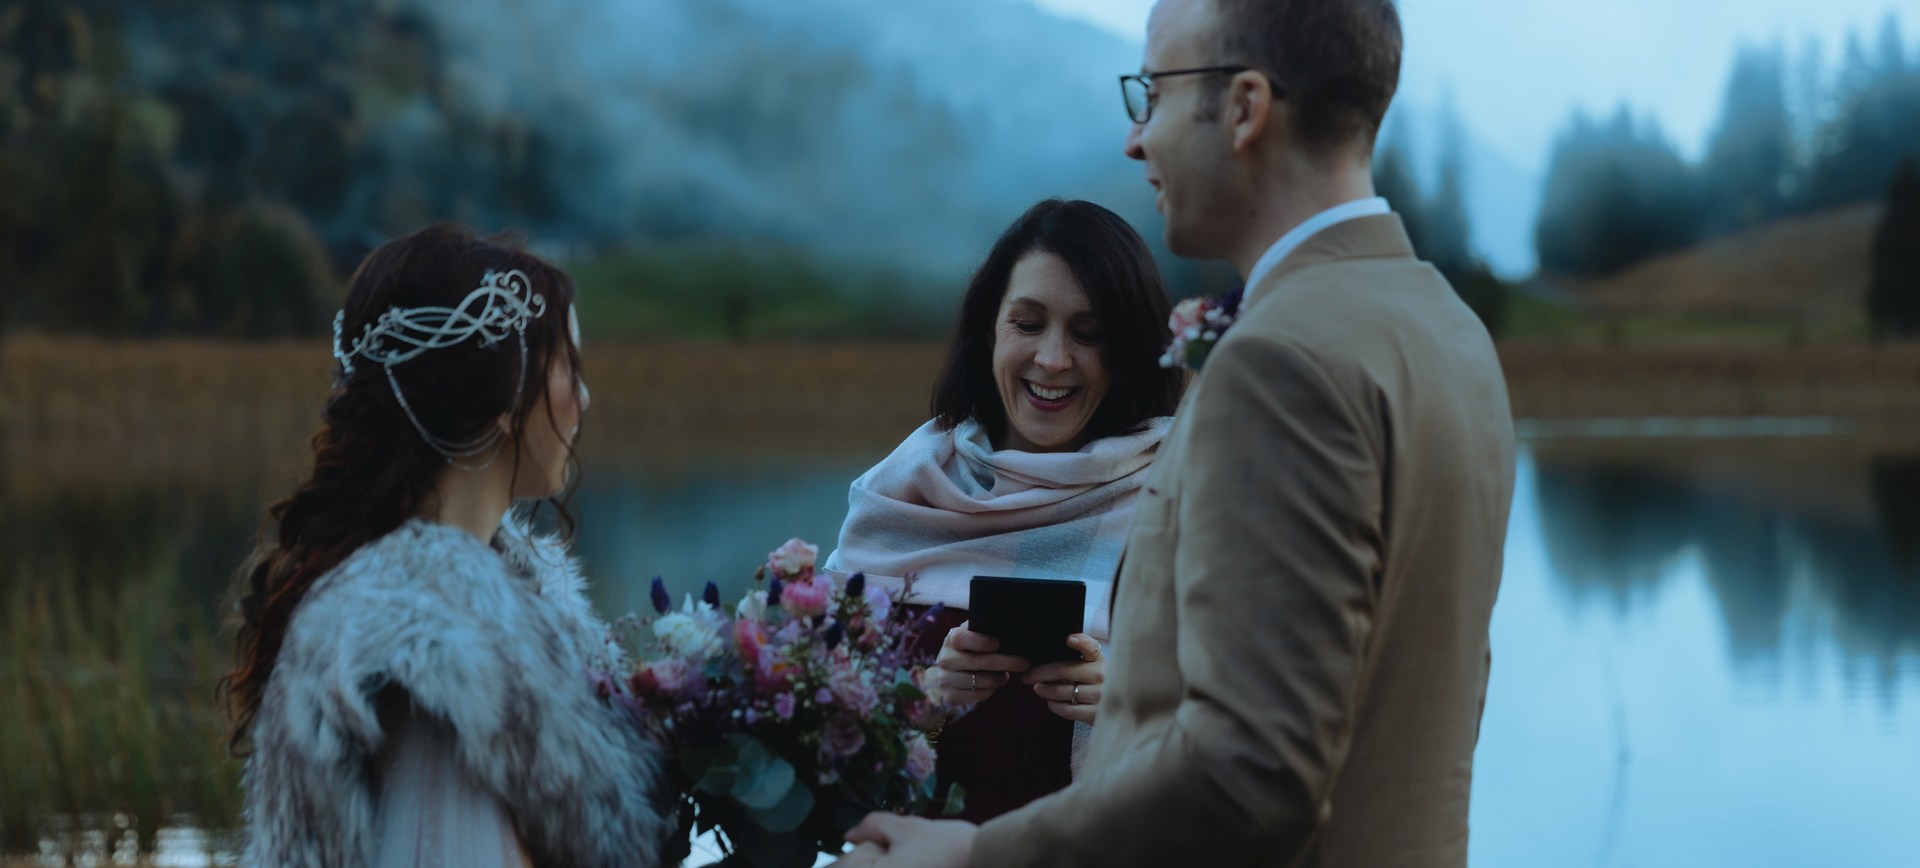 Wedding Vow Renewal Switzerland Elopement